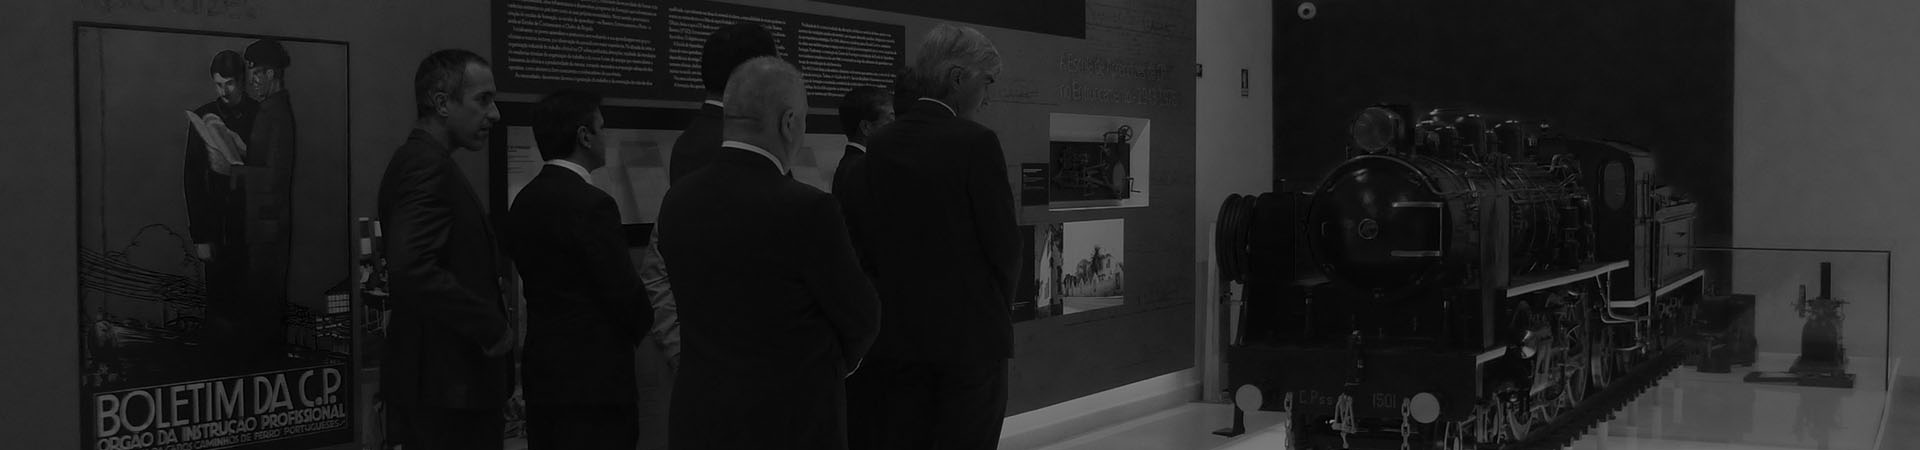 Foto de un grupo empresarial visitando el museo